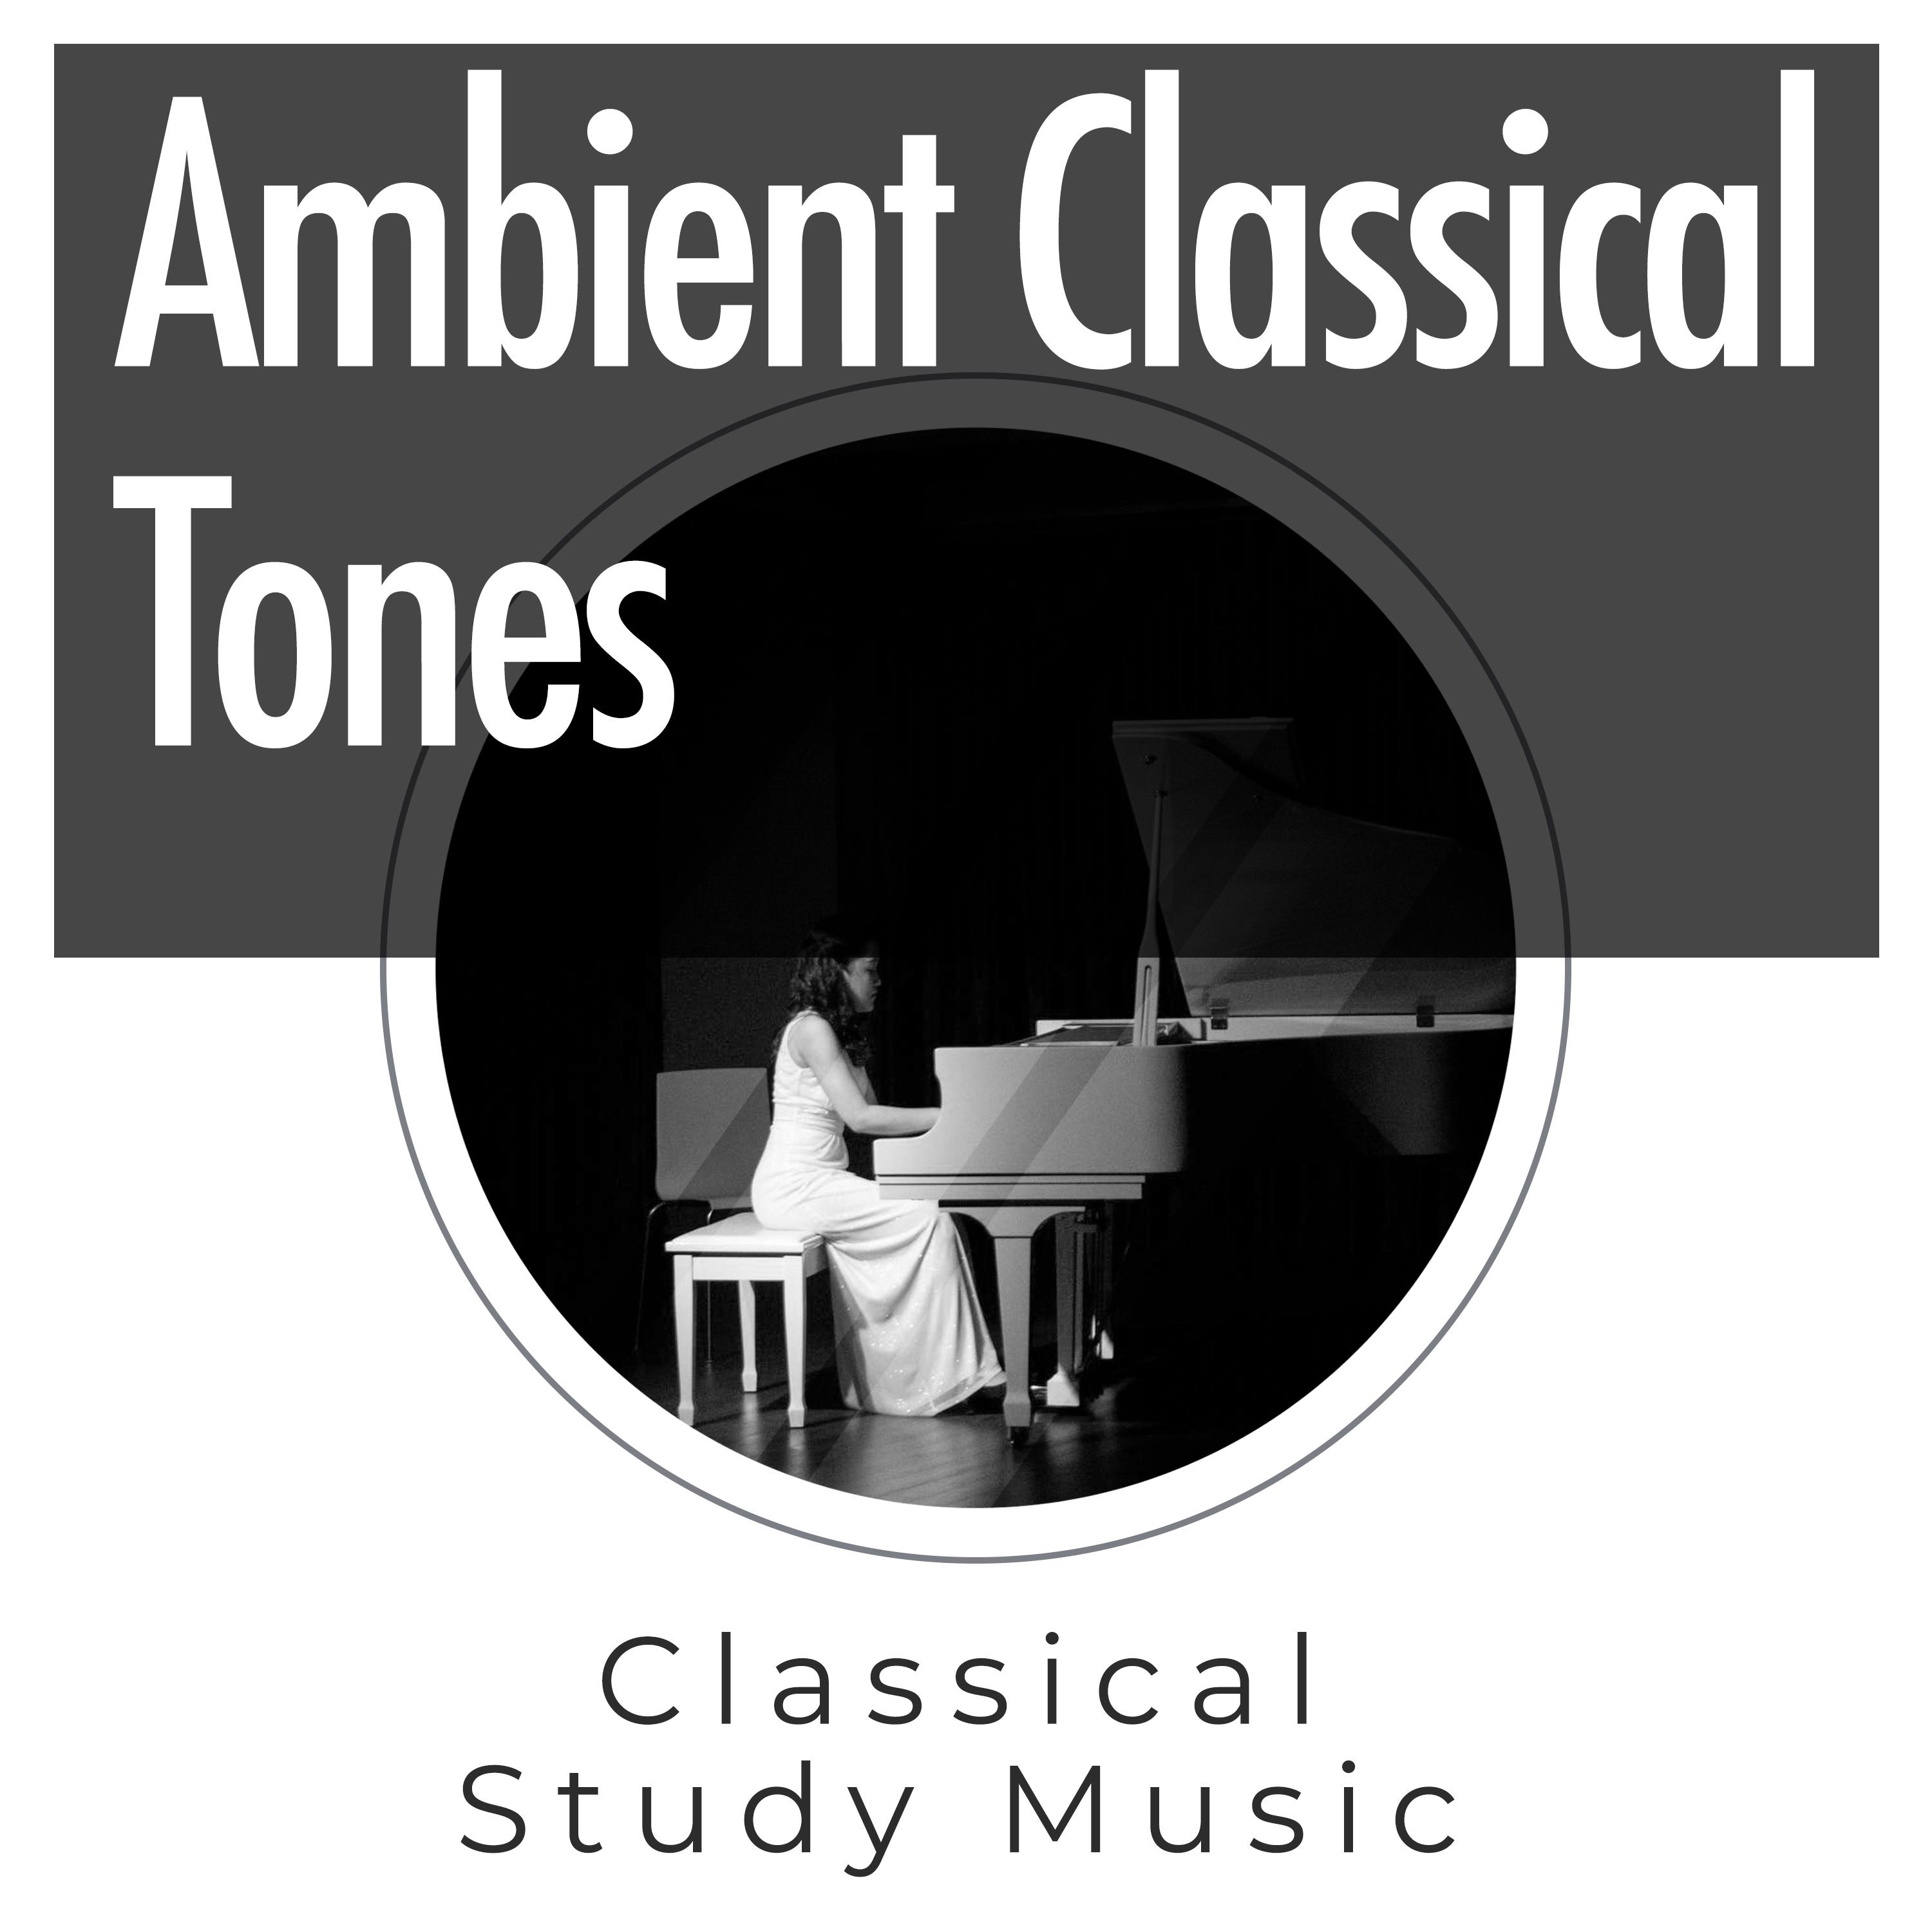 Ambient Classical Tones